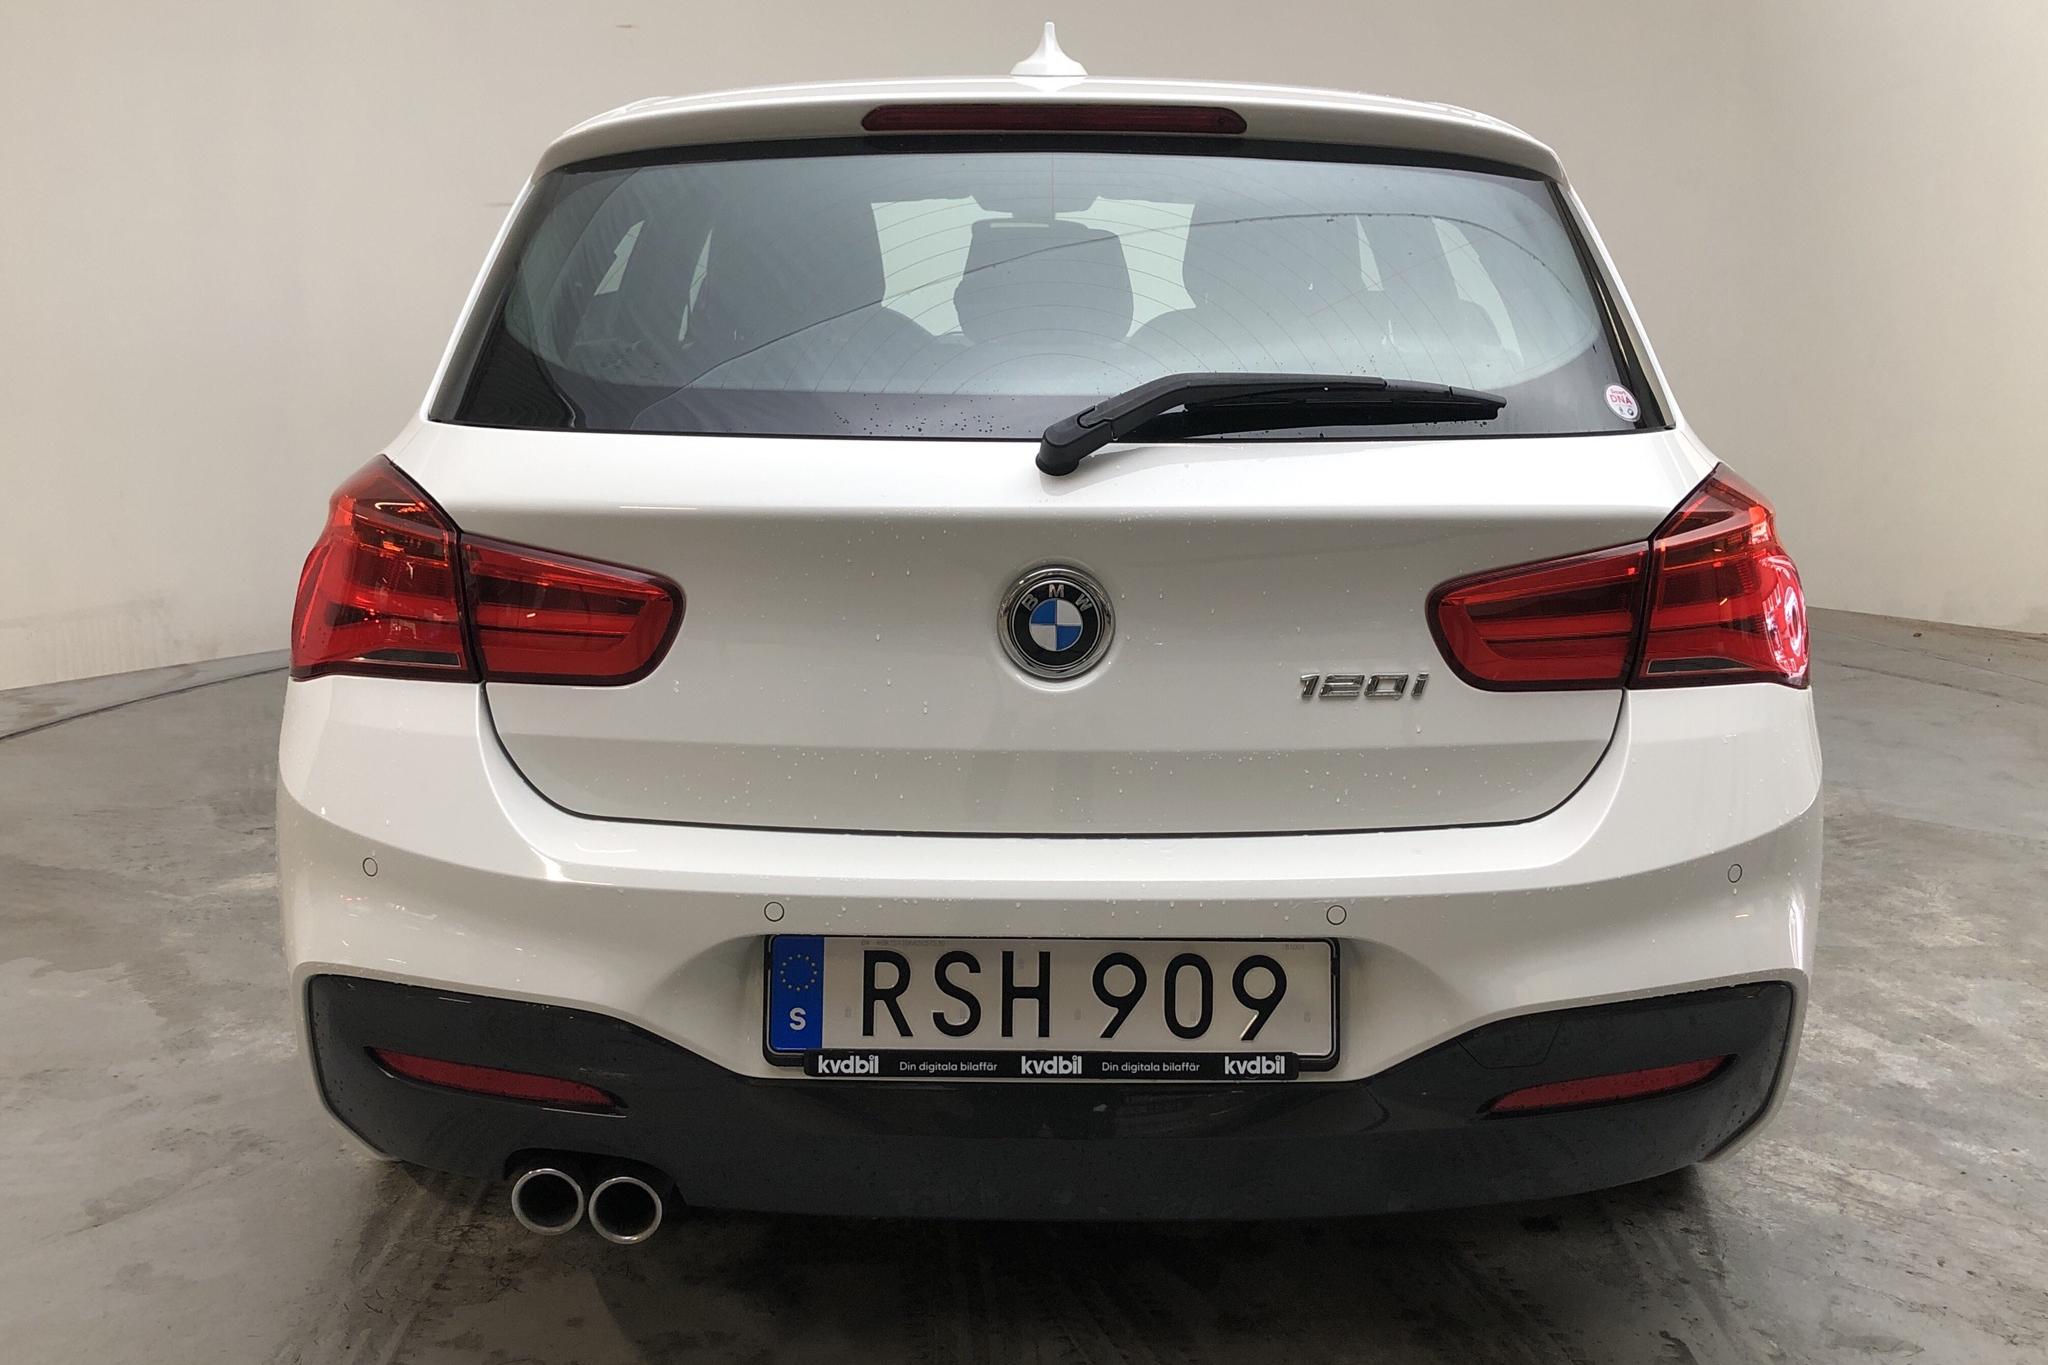 BMW 120i 5dr, F20 (184hk) - 52 530 km - Automatic - white - 2019